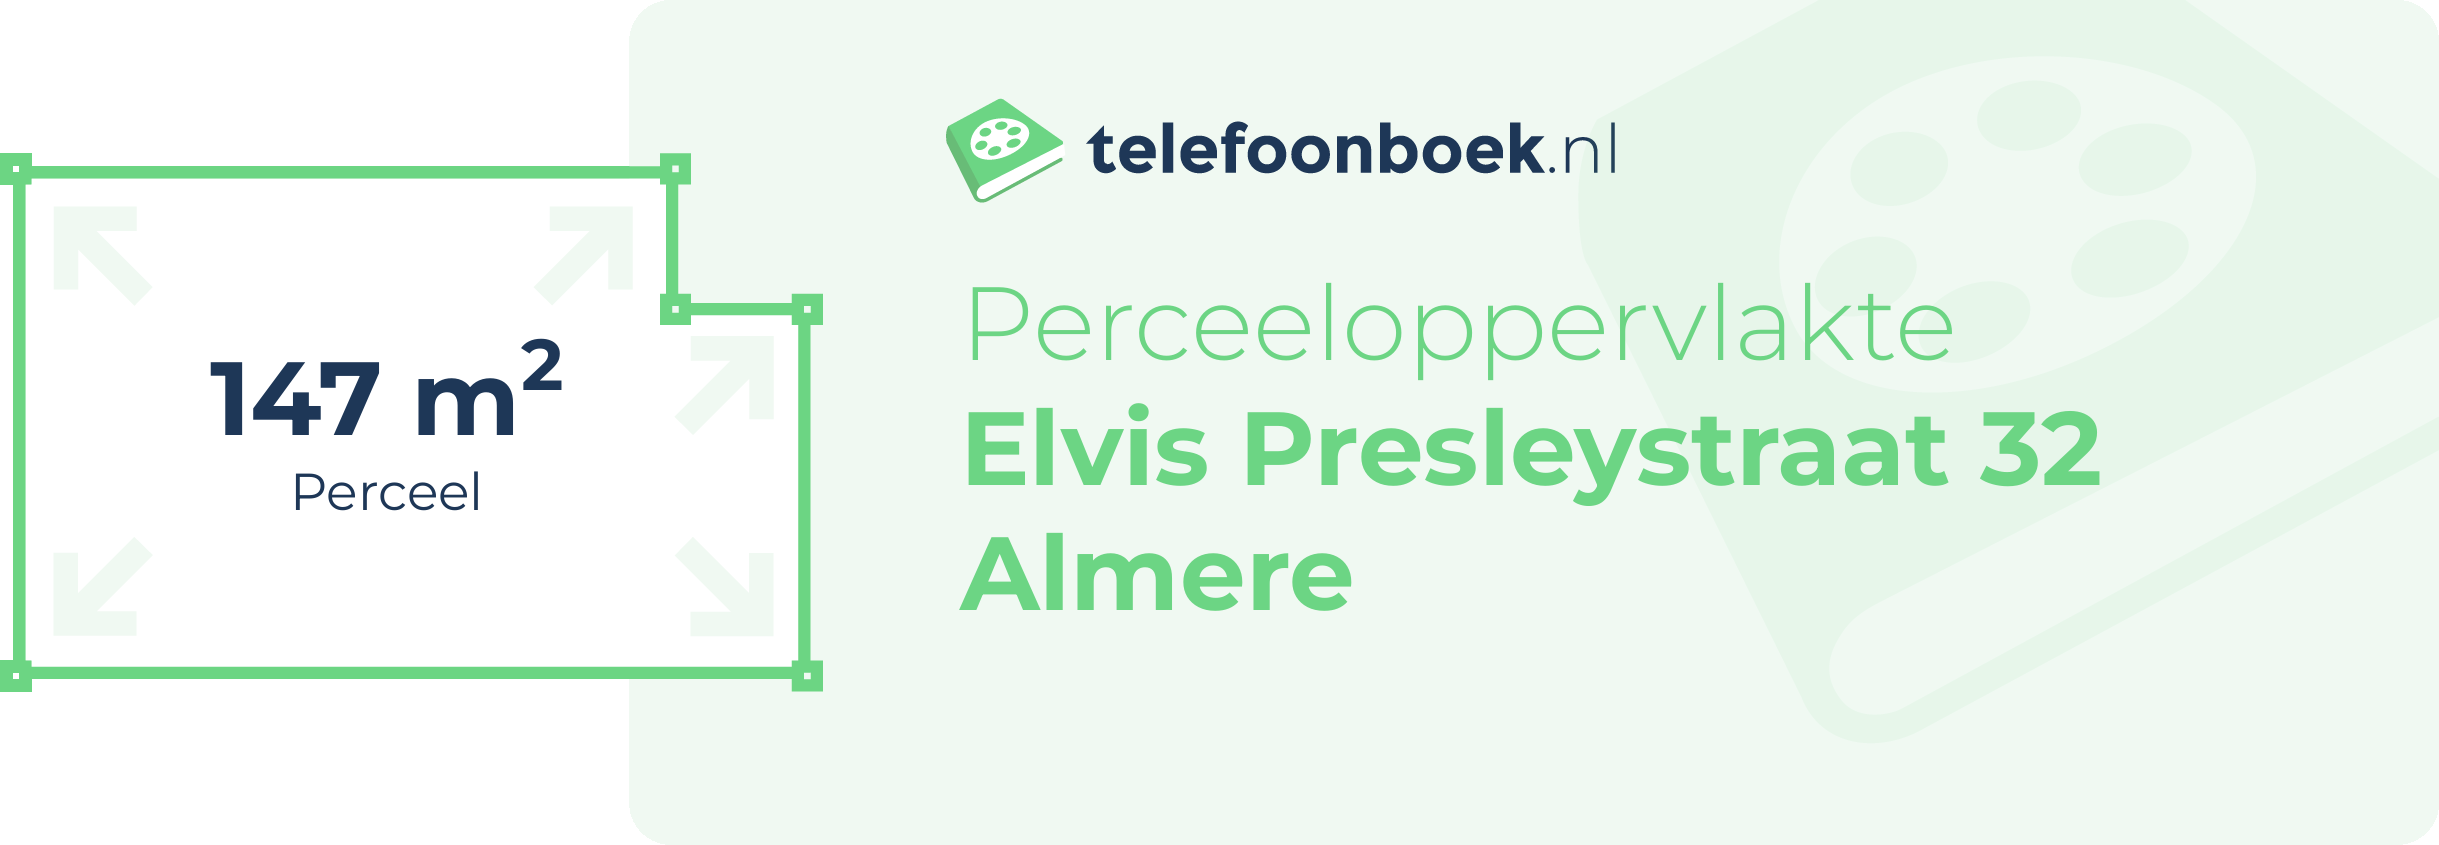 Perceeloppervlakte Elvis Presleystraat 32 Almere